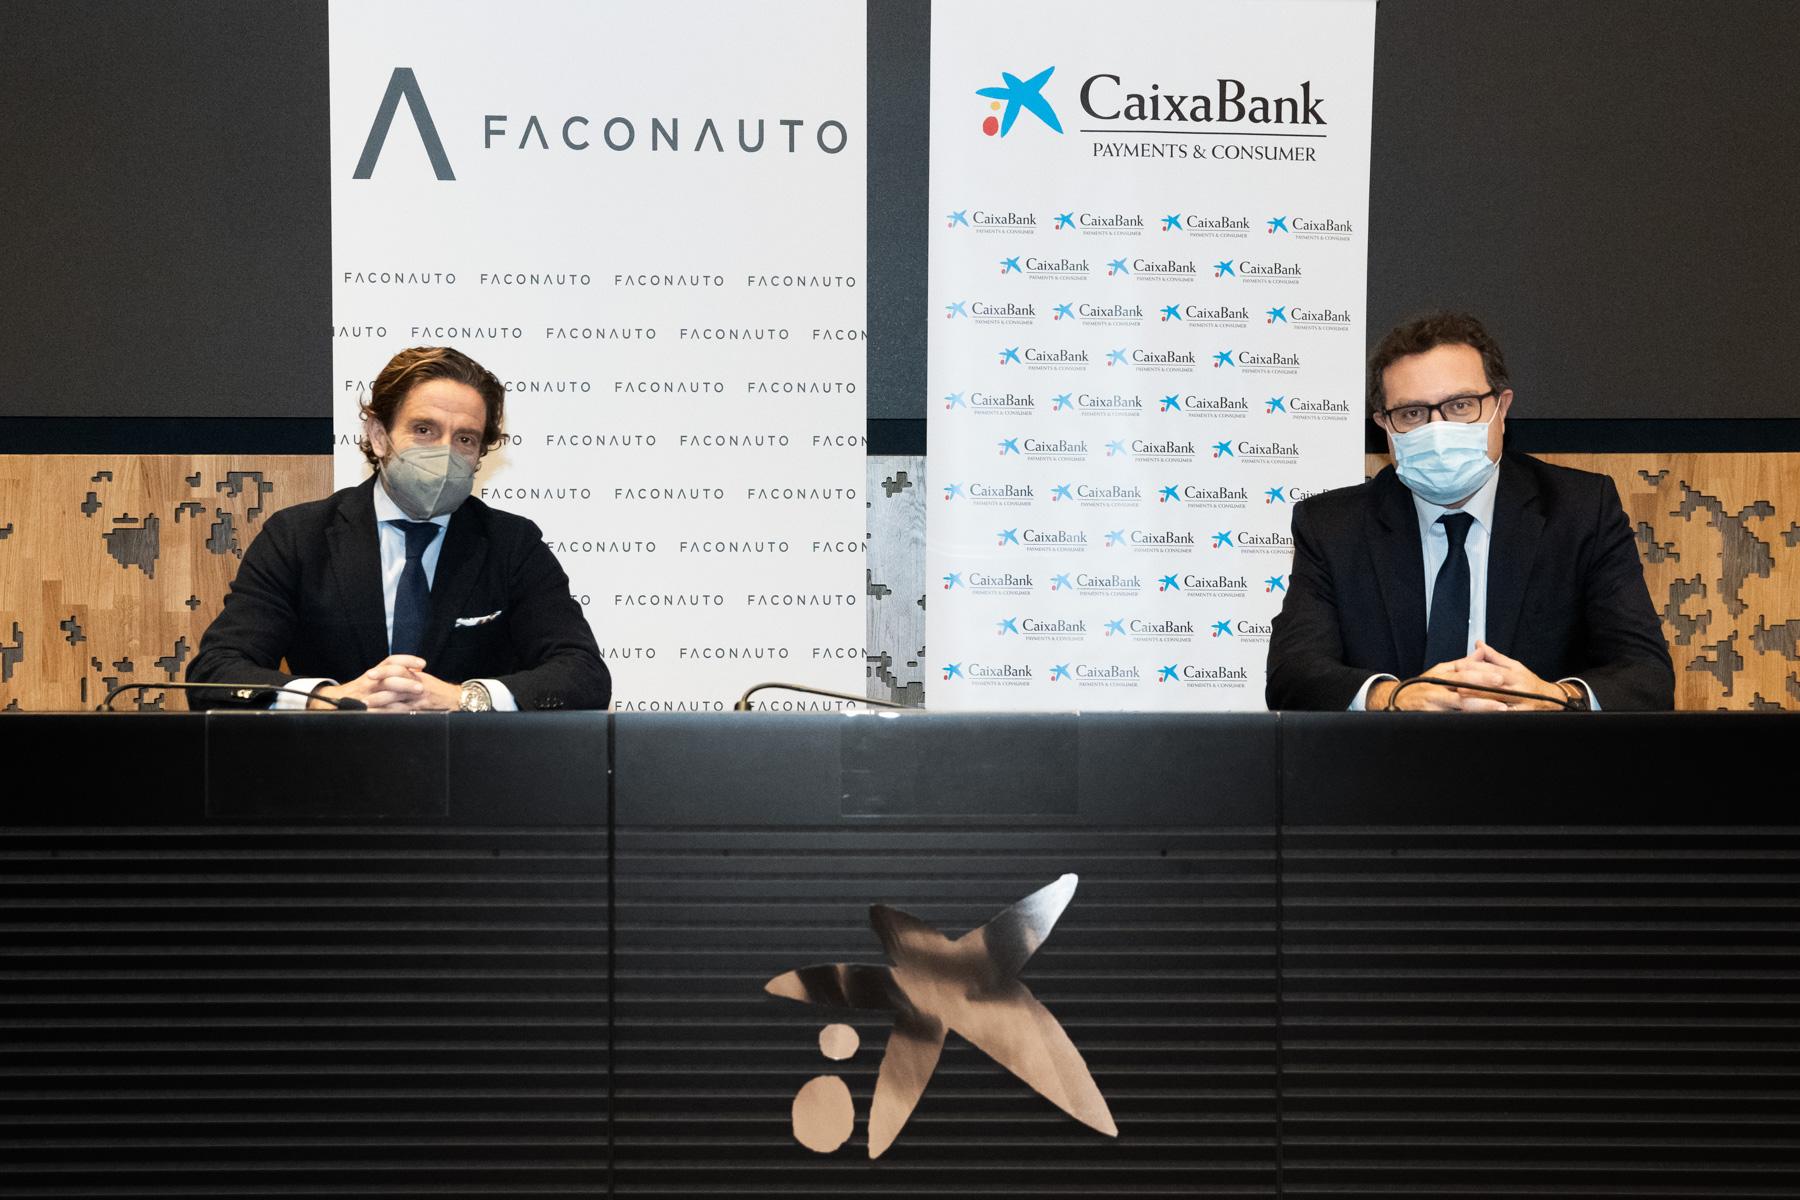 El presidente de Faconauto, Gerardo Pérez, y Xavier Oms, director de movilidad y vendors de CaixaBank Payments & Consumer, han escenificado este nuevo compromiso entre ambas organizaciones